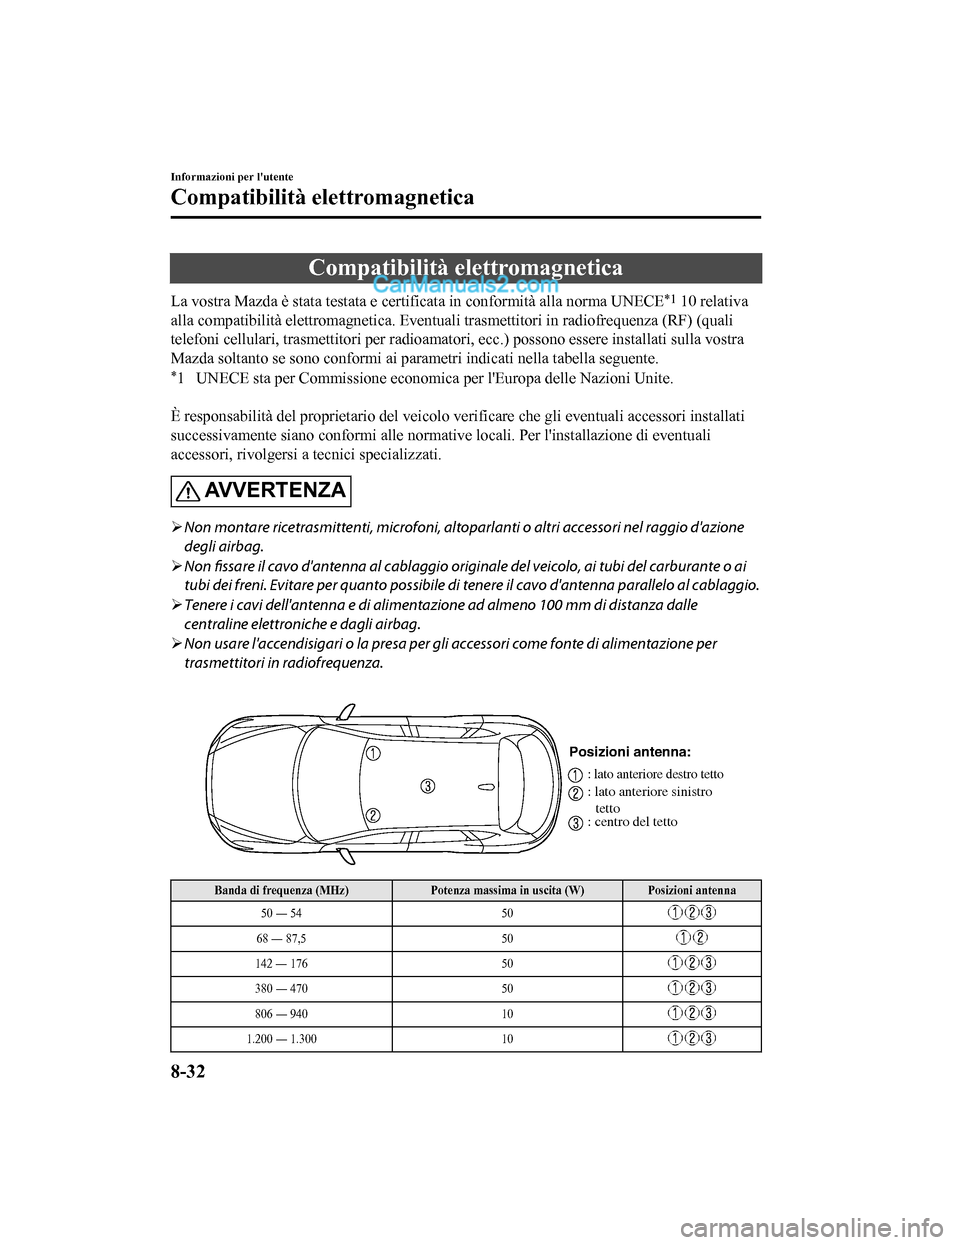 MAZDA MODEL CX-5 2017  Manuale del proprietario (in Italian) Compatibilità elettromagnetica
La vostra Mazda è stata testata e certificata in conformità alla norma UNECE*1 10 relativa
alla compatibilità elettromagneti ca. Eventuali trasmettitori in radiofreq